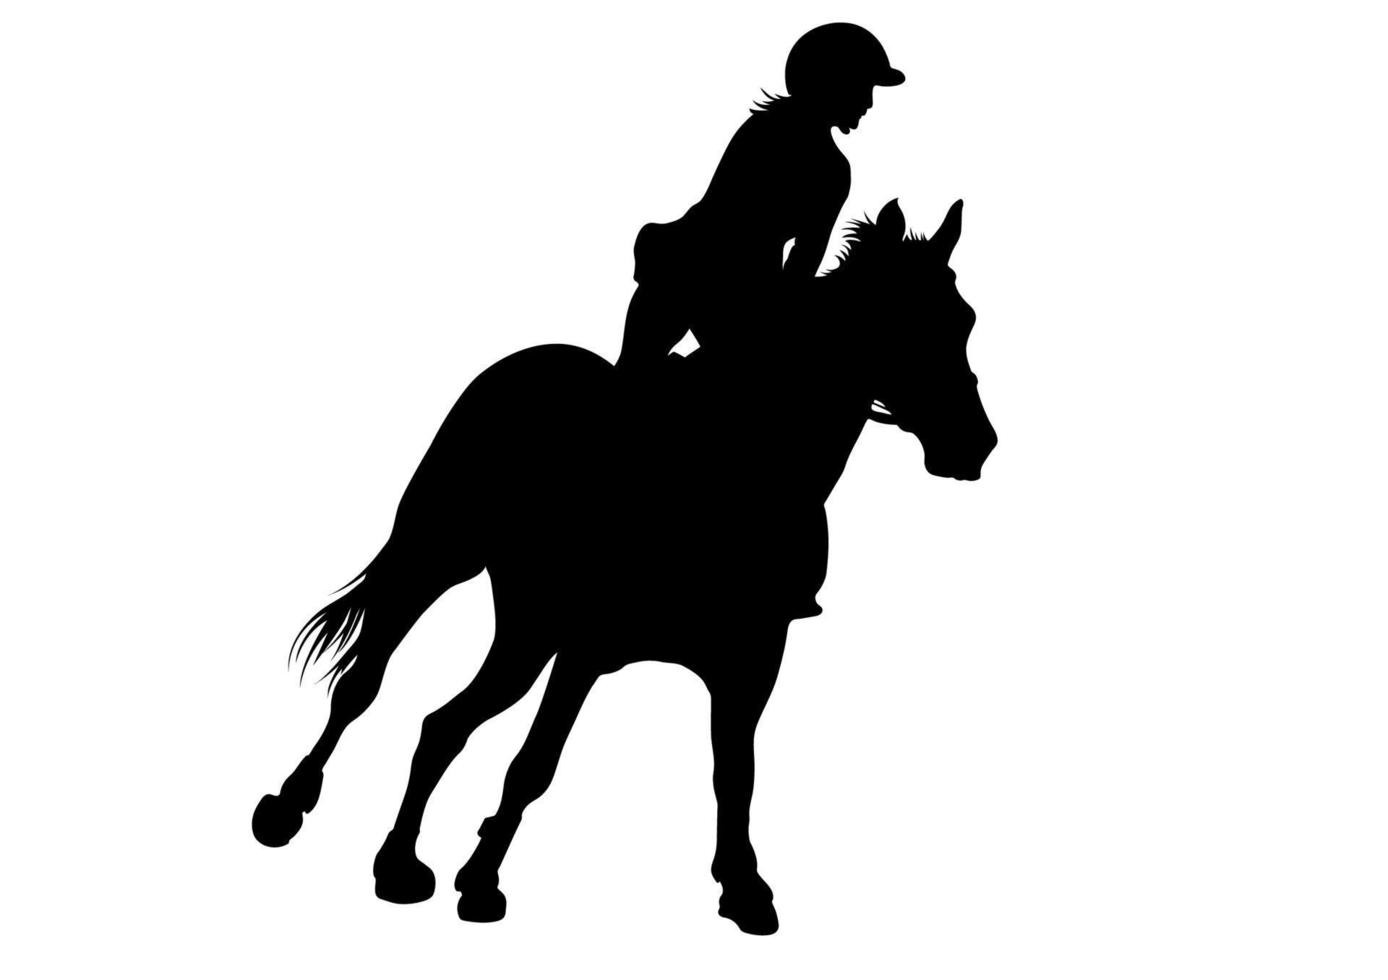 conception graphique silhouette course de chevaux femme pour course isolé fond blanc illustration vectorielle vecteur